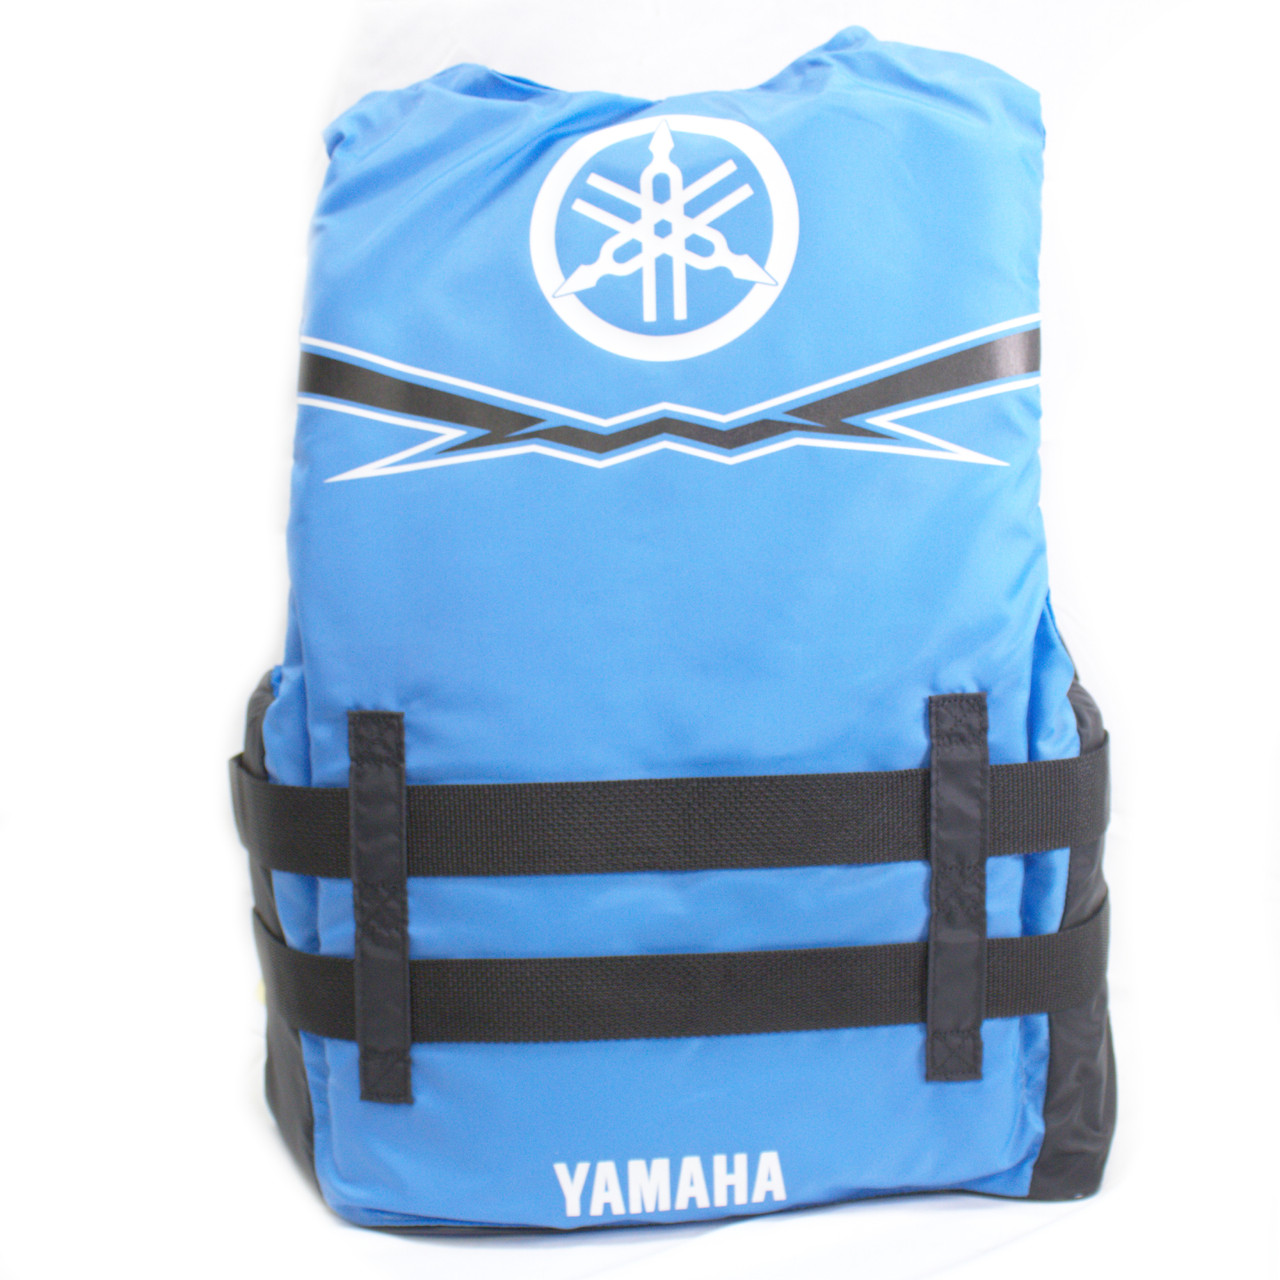 Yamaha New OEM Women's Medium Blue Nylon Value Life Jacket, MAW-21V3B-BL-MD